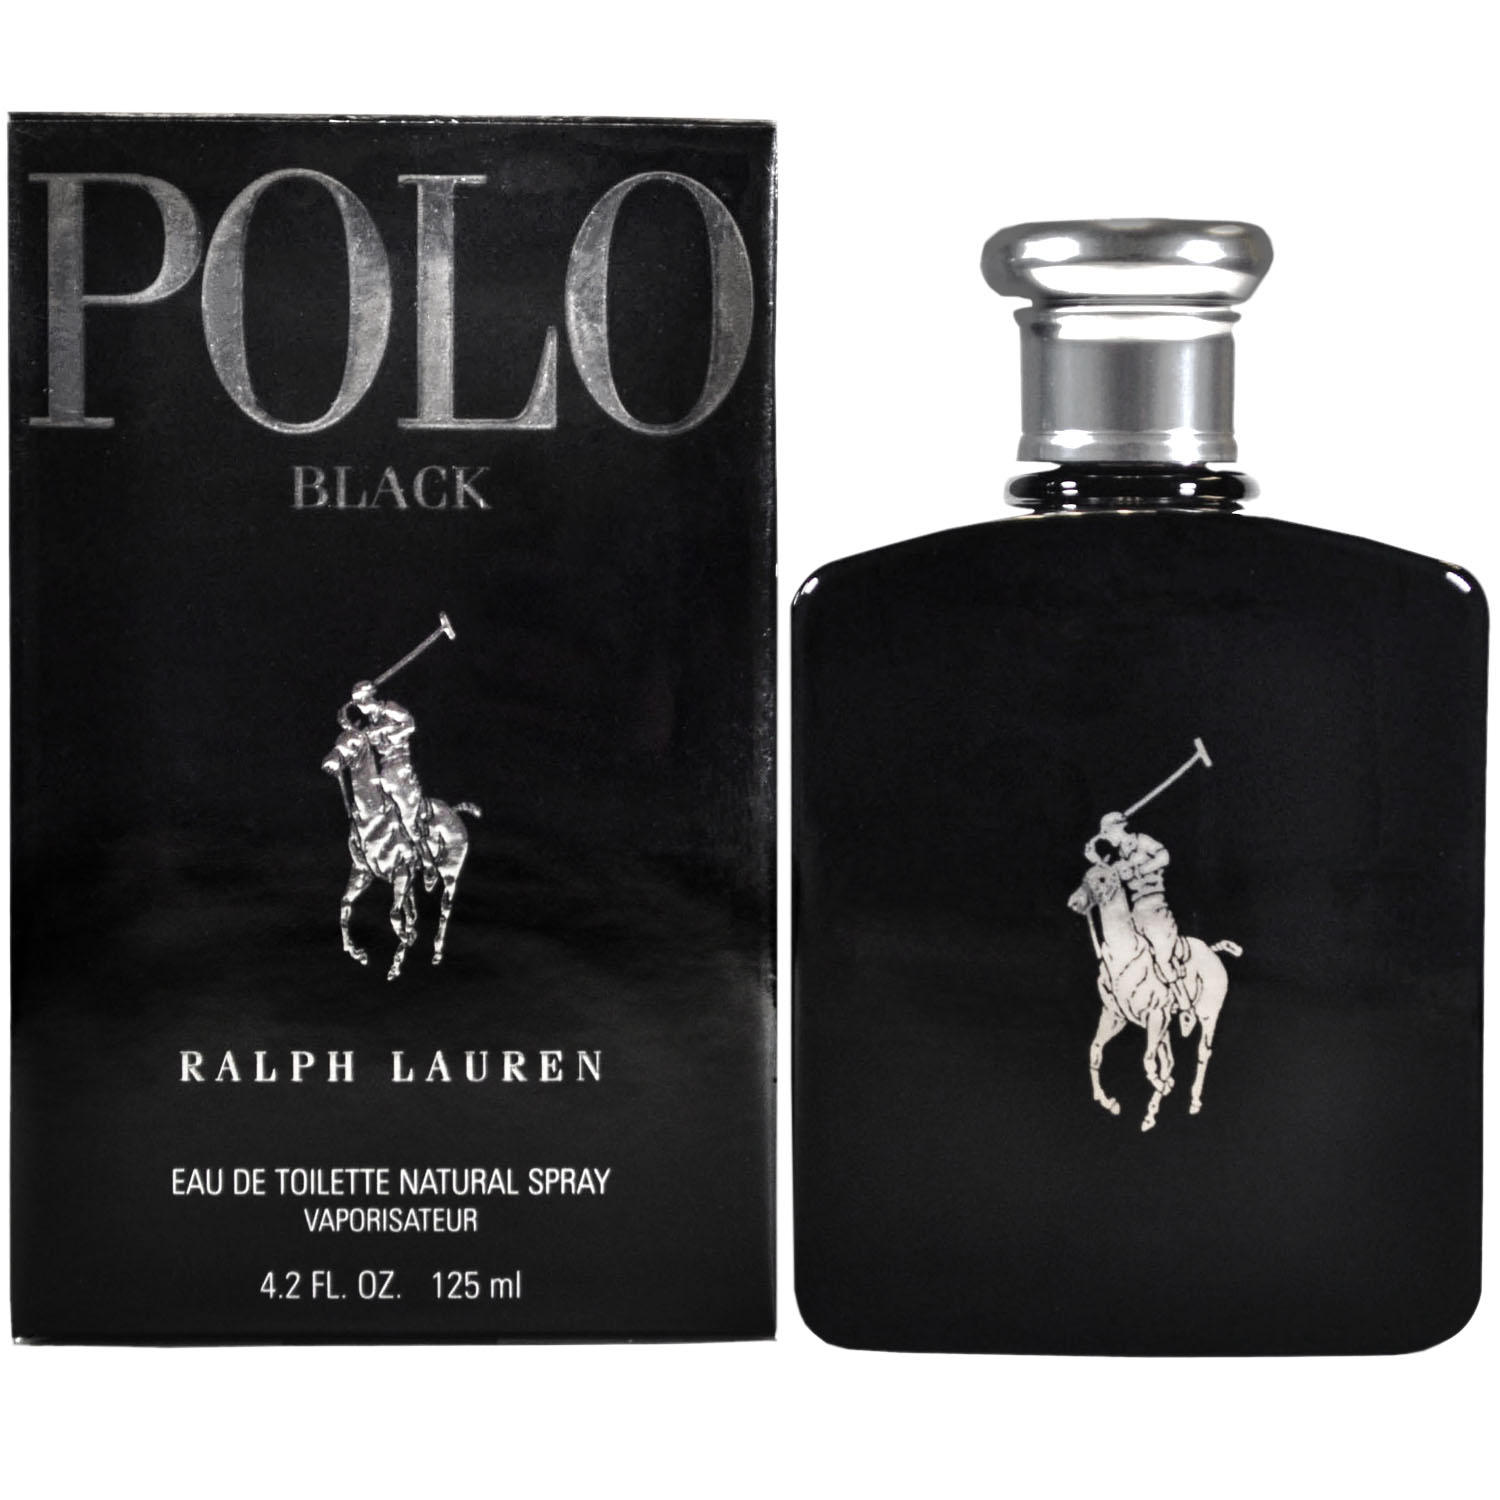 Polo Black for Men By Ralph Lauren 4.2 oz. Eau de Toilette